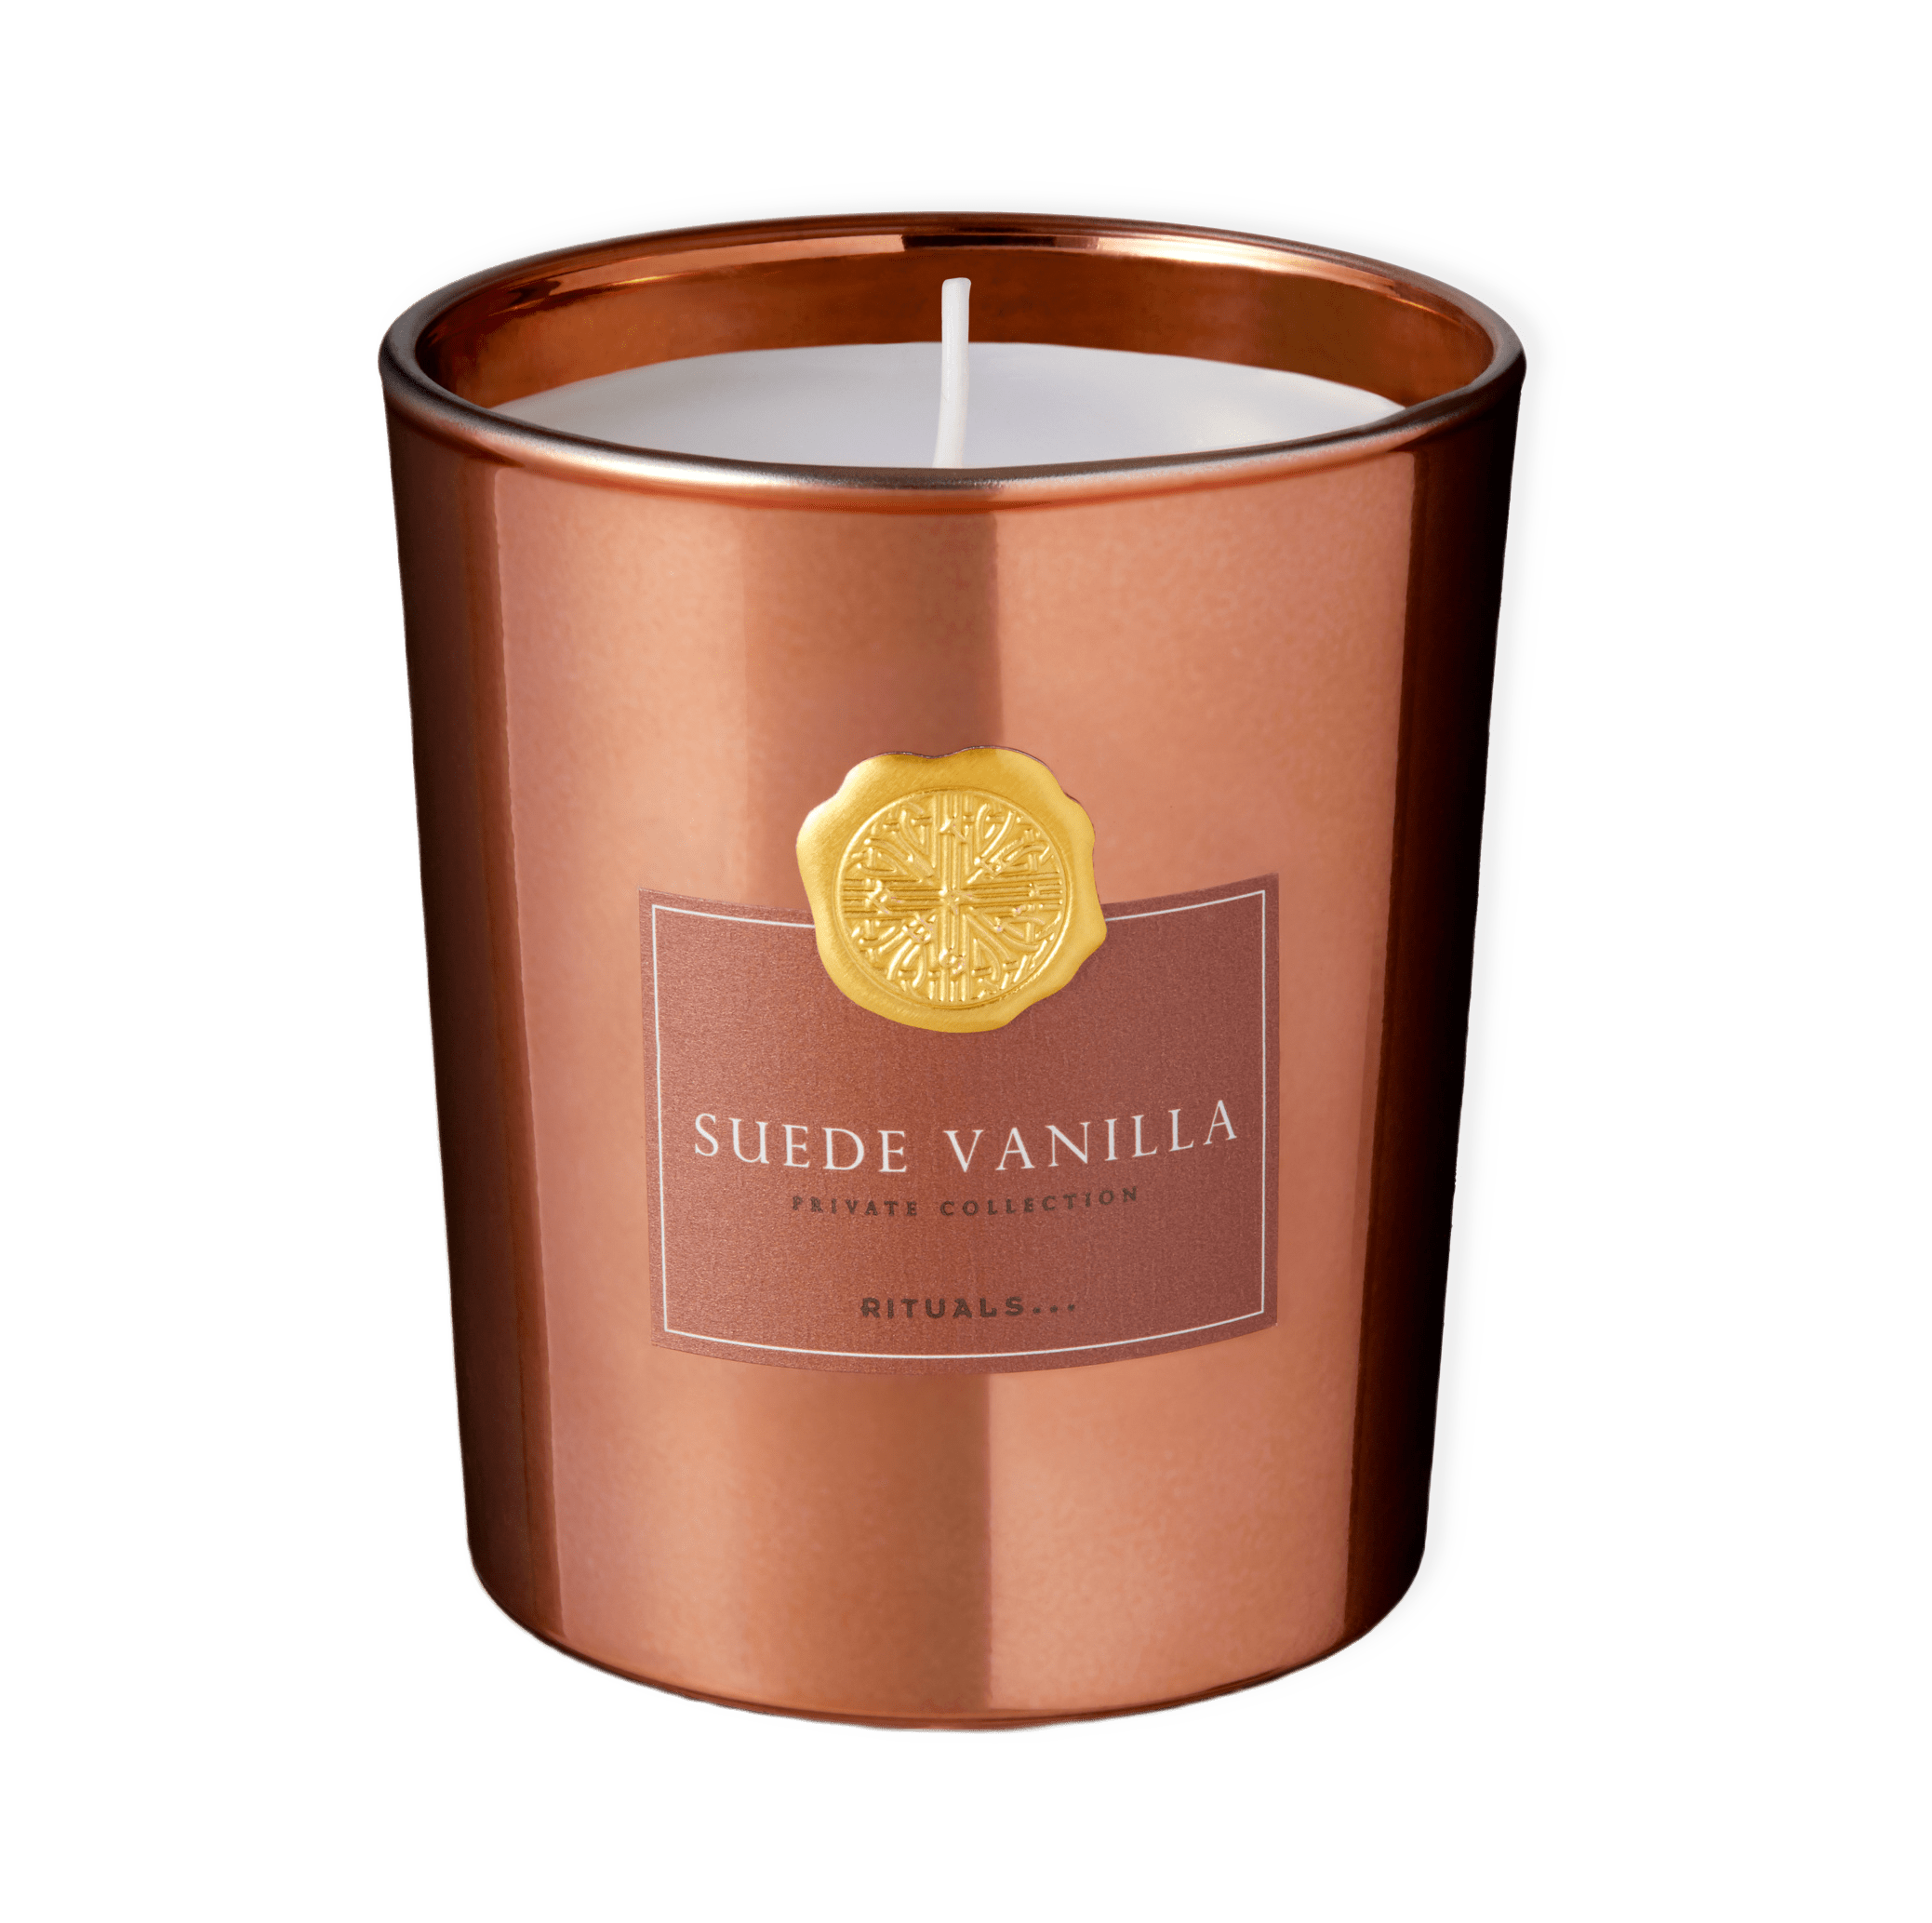 Suede Vanilla Scented Candle från Rituals